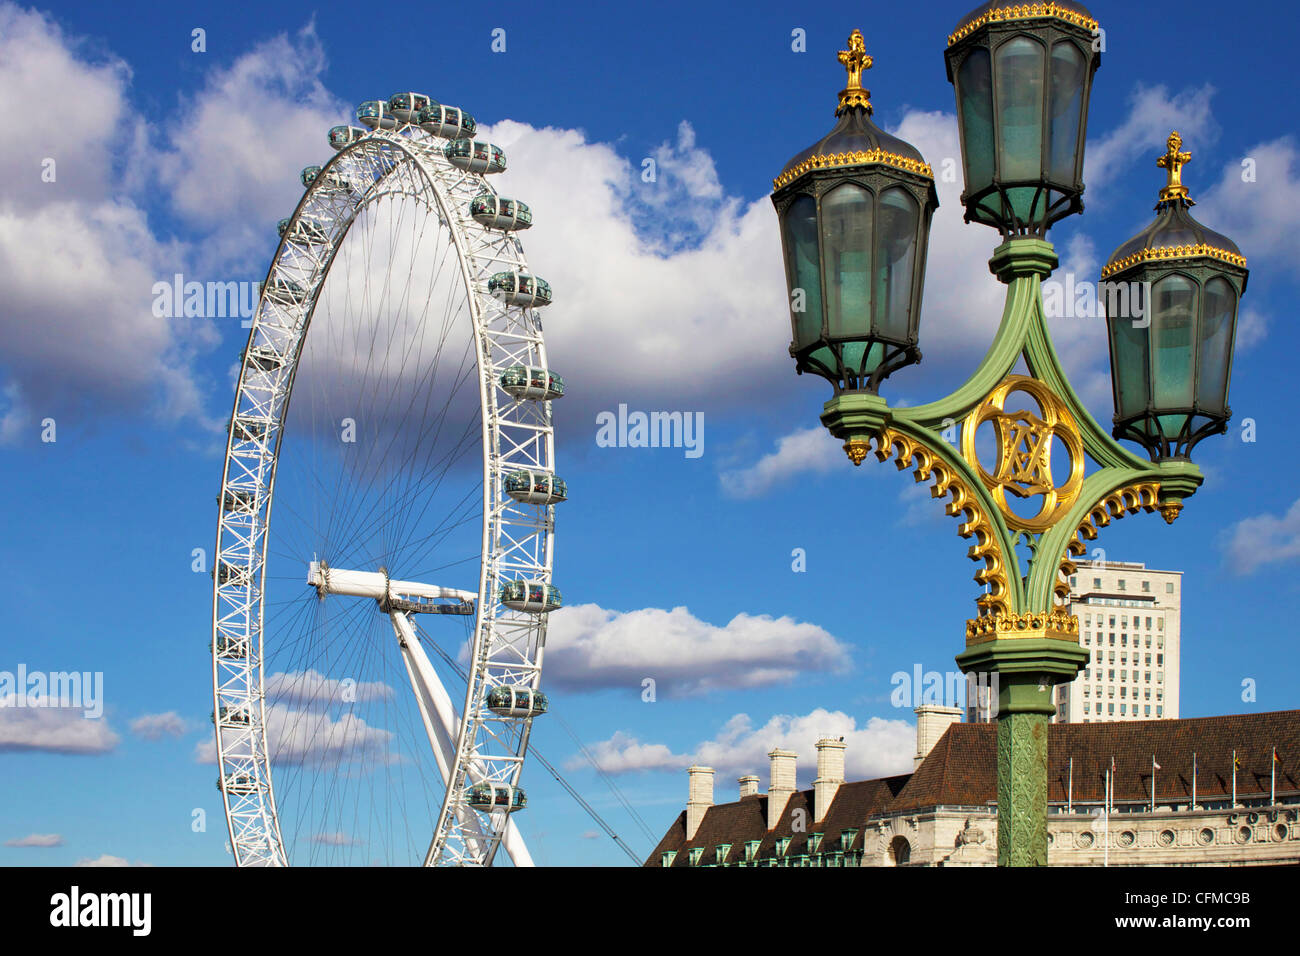 London Eye, London, England, United Kingdom, Europe Stock Photo